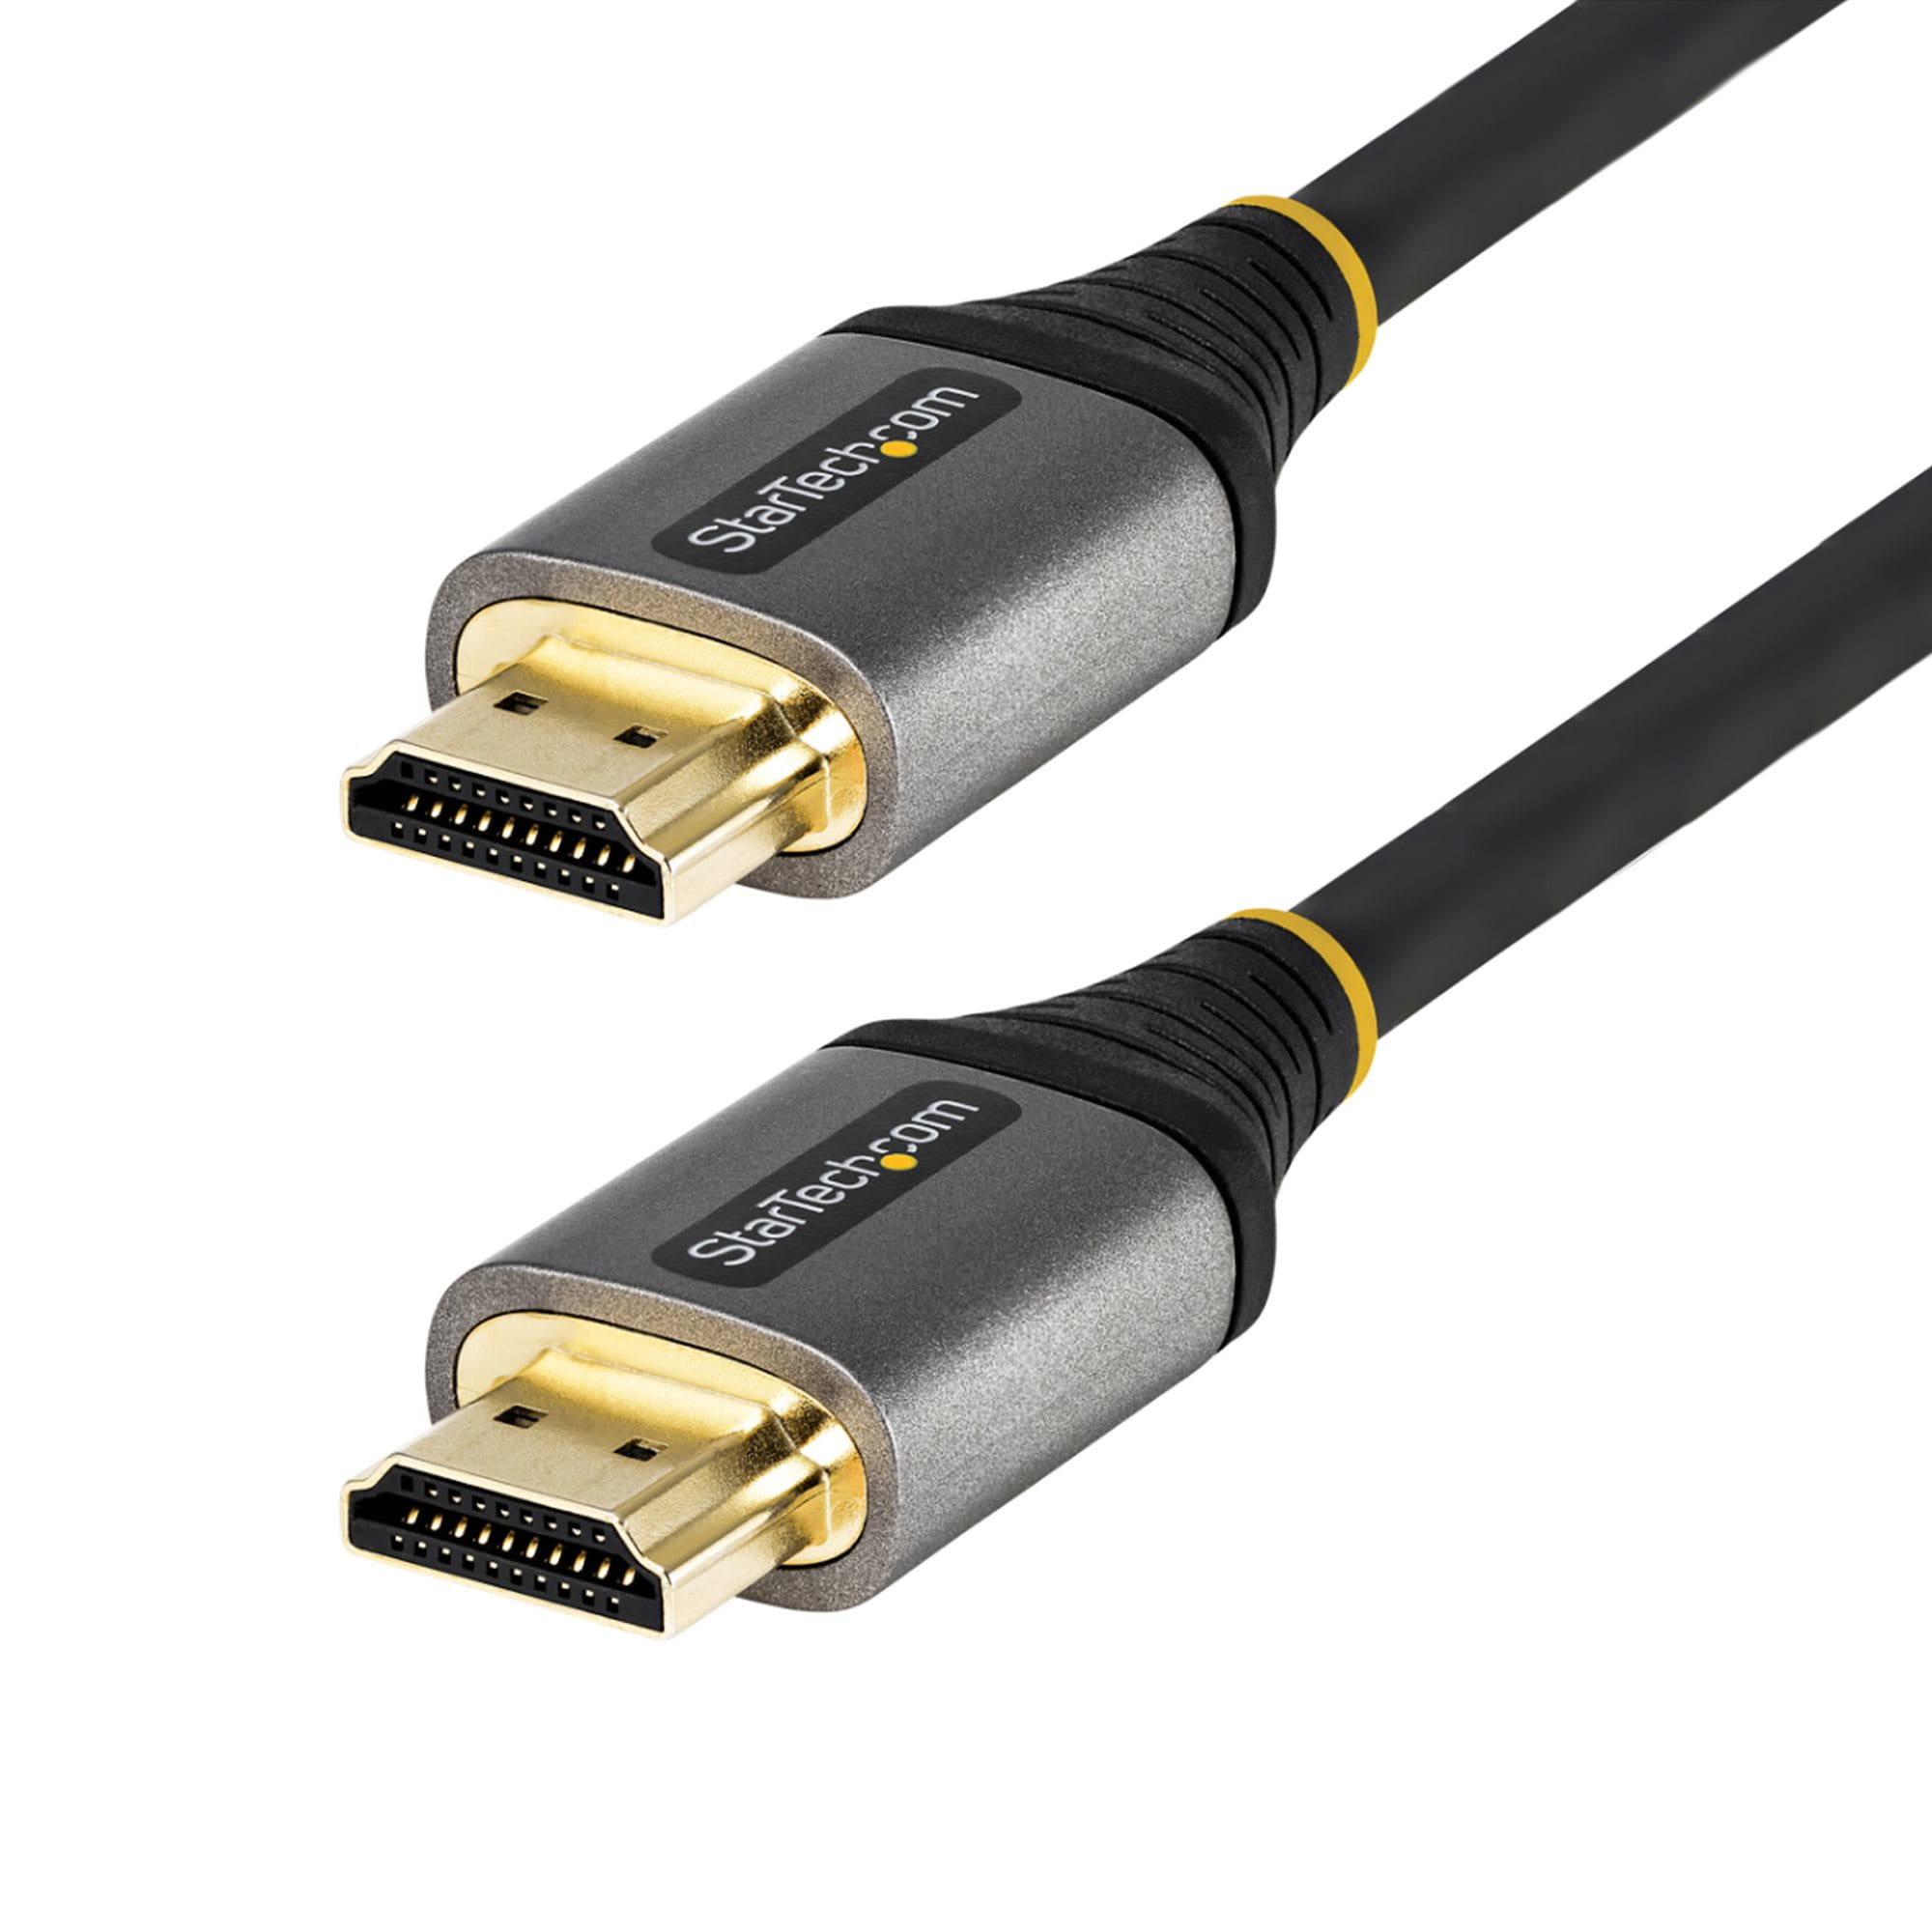 StarTech.com 3m Premium zertifiziertes HDMI 2.0 Kabel - High Speed Ultra HD 4K 60Hz HDMI Kabel mit Ethernet - HDR10, ARC - UHD HDMI Videokabel - Für UHD Monitore, TVs, Displays - M/M (HDMMV3M)